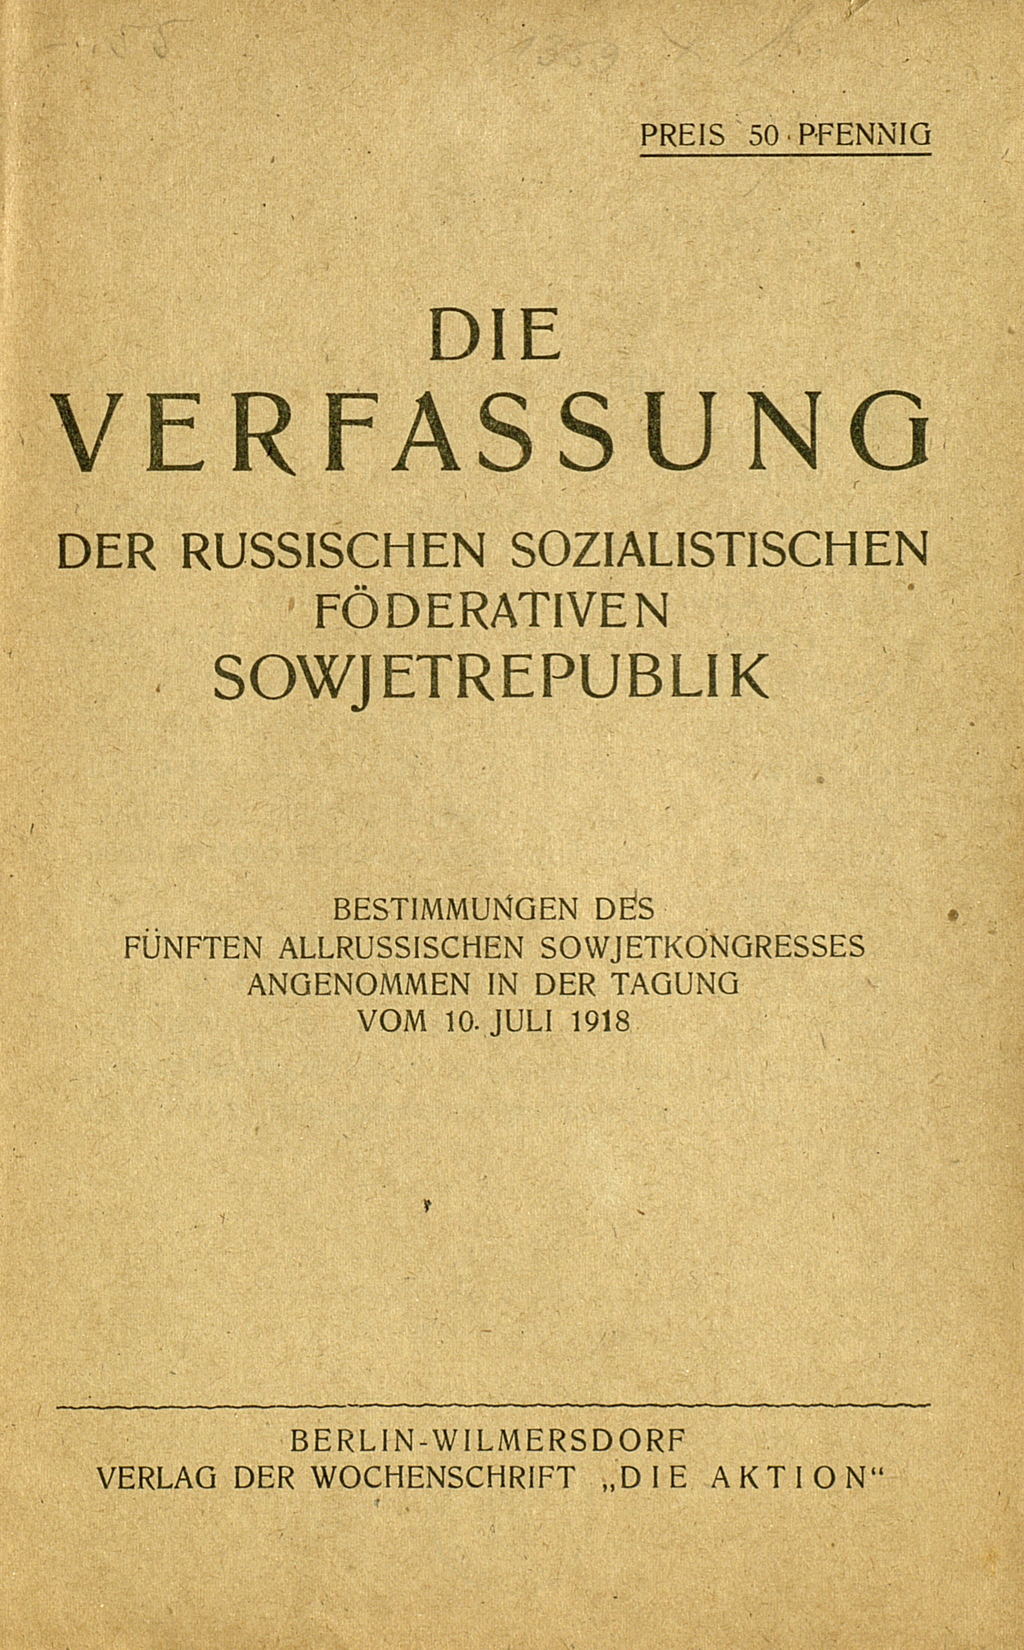 Zu sehen ist das Titelblatt der Veröffentlichung mit der deutschen Übersetzung der Verfassung der Russischen Sozialistischen Föderativen Sowjetrepublik.